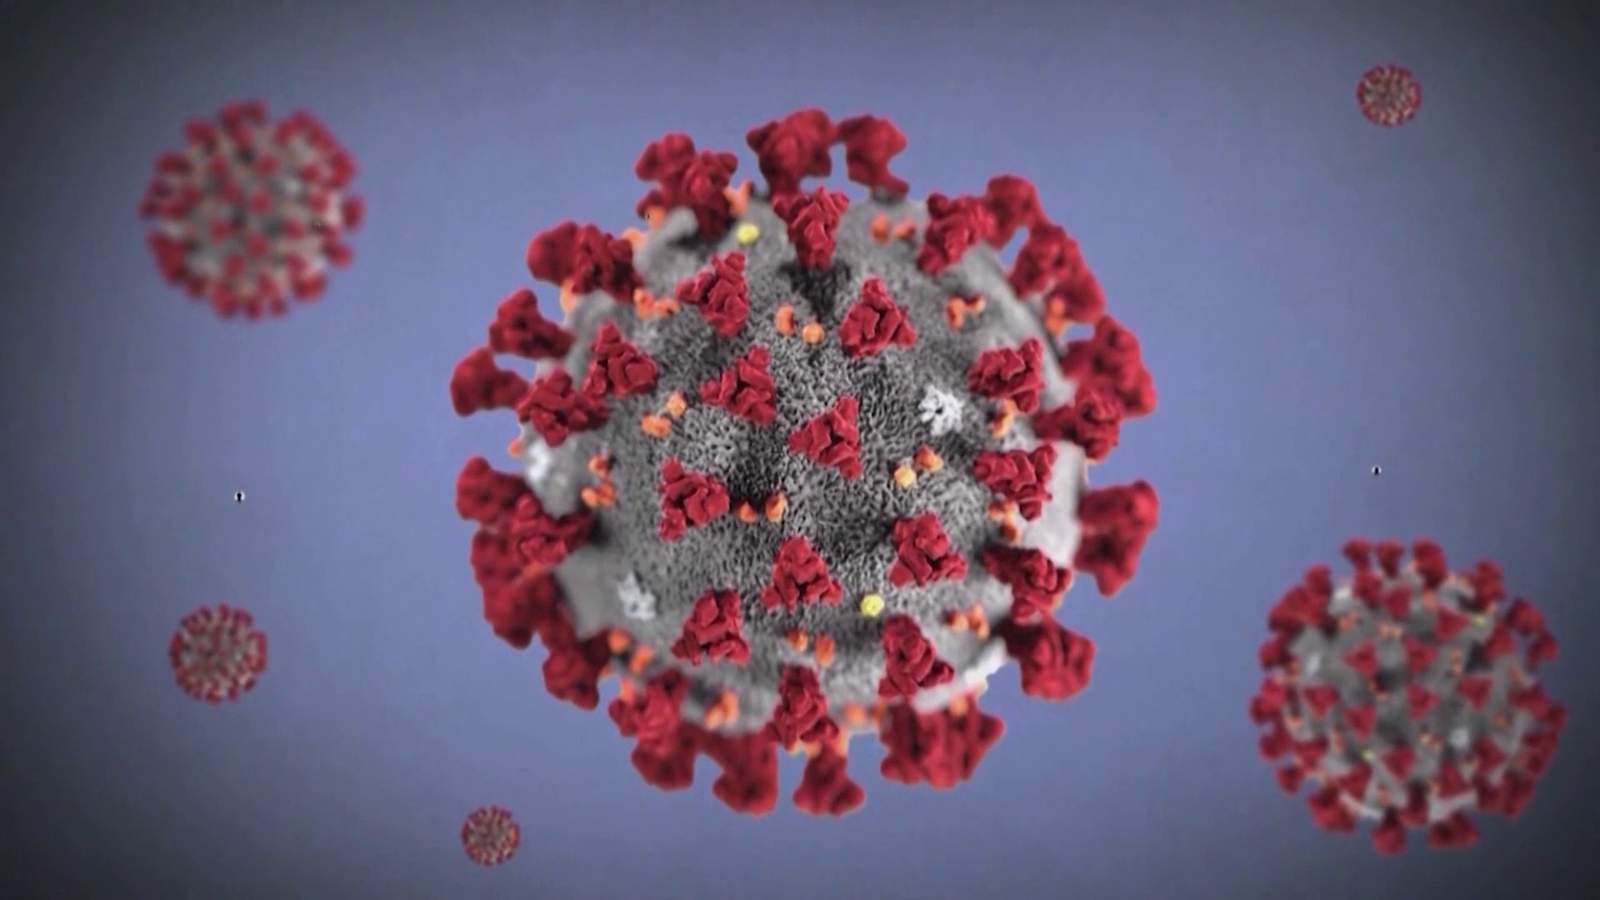 Coronavirus pandemic: How it has impacted the world